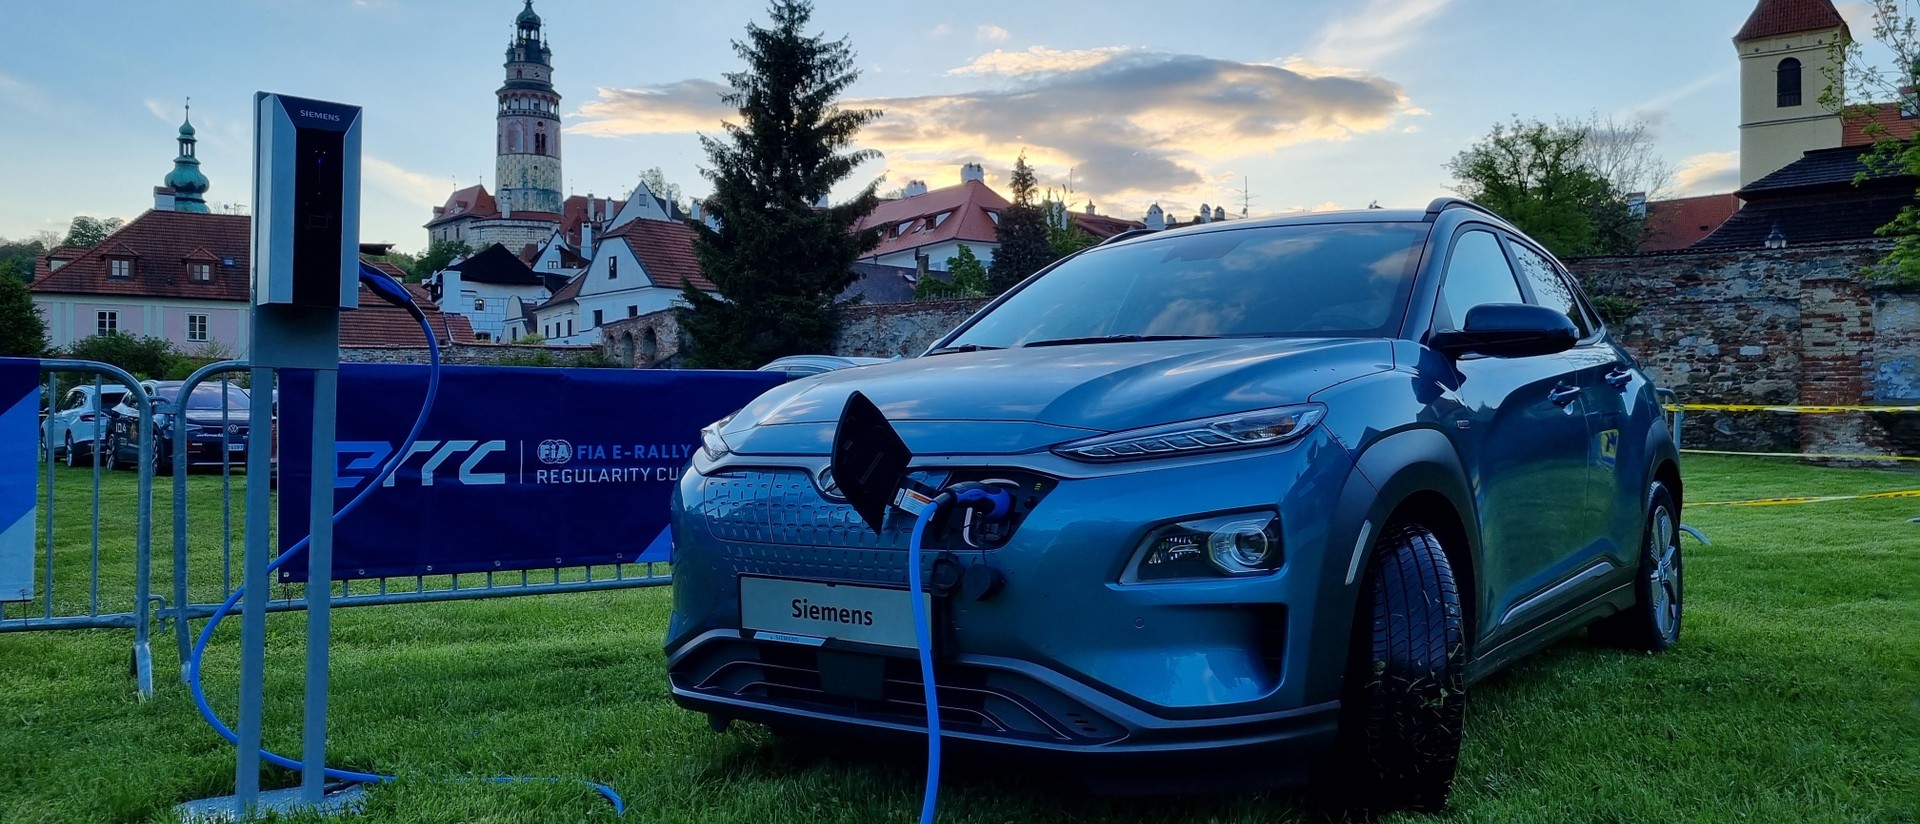 New Energies Rallye 2021 Siemens